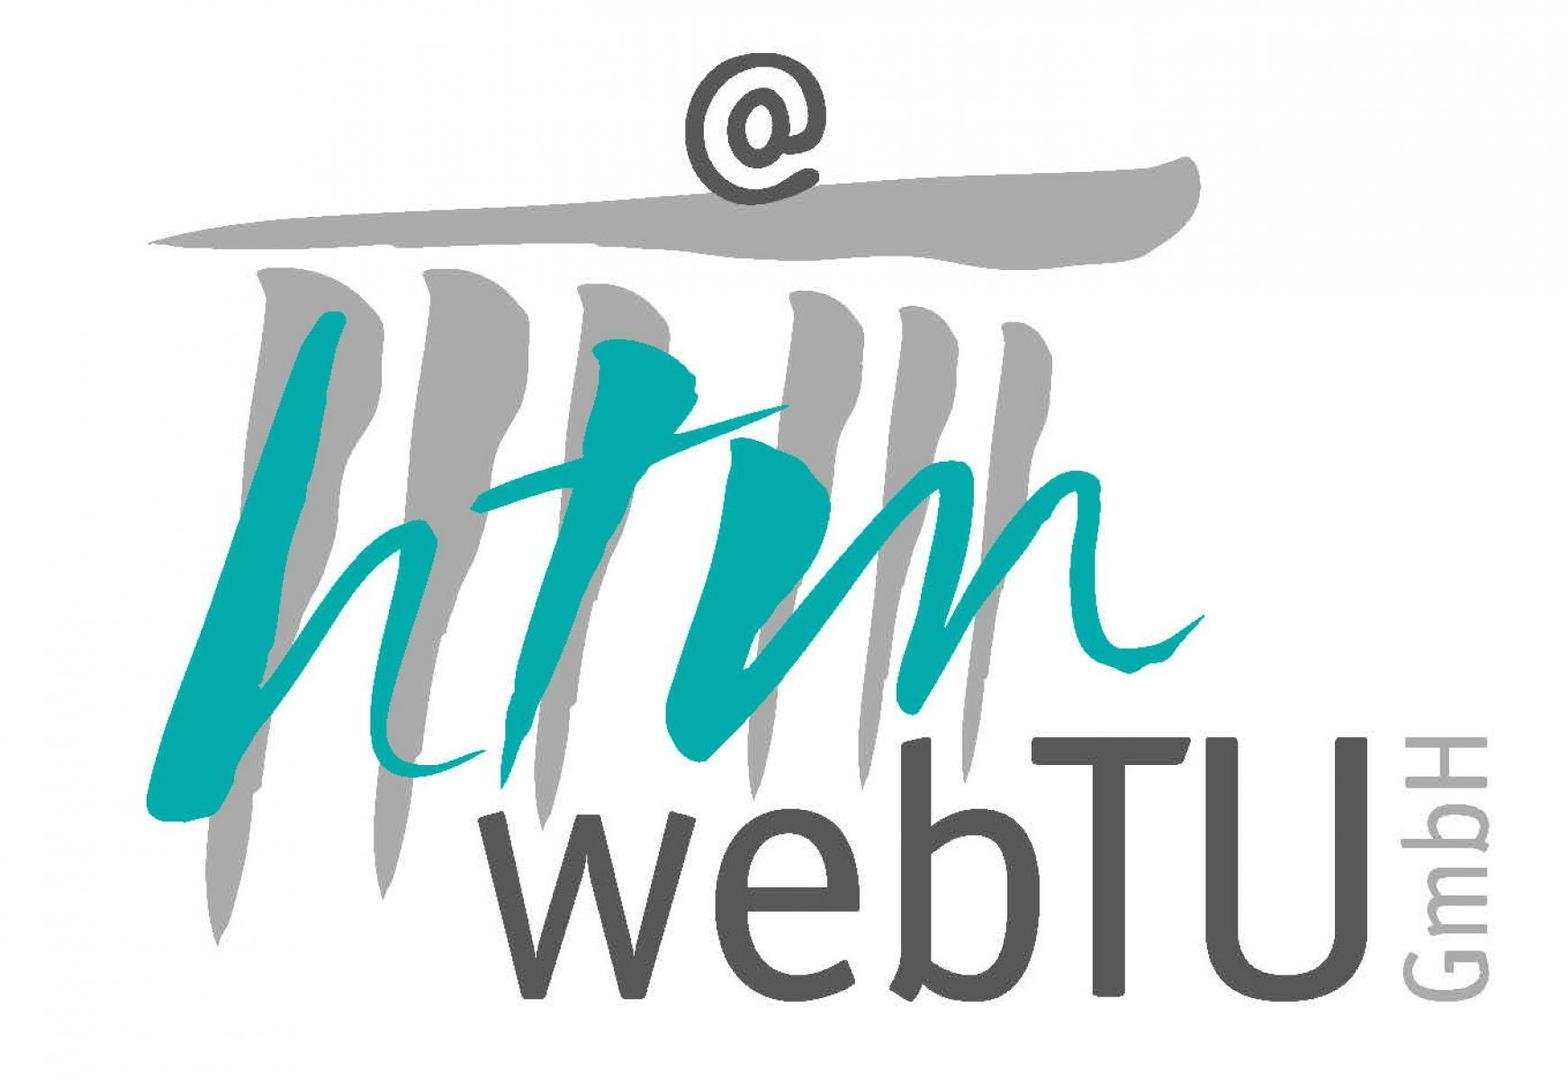 HTM webTU GmbH Logo